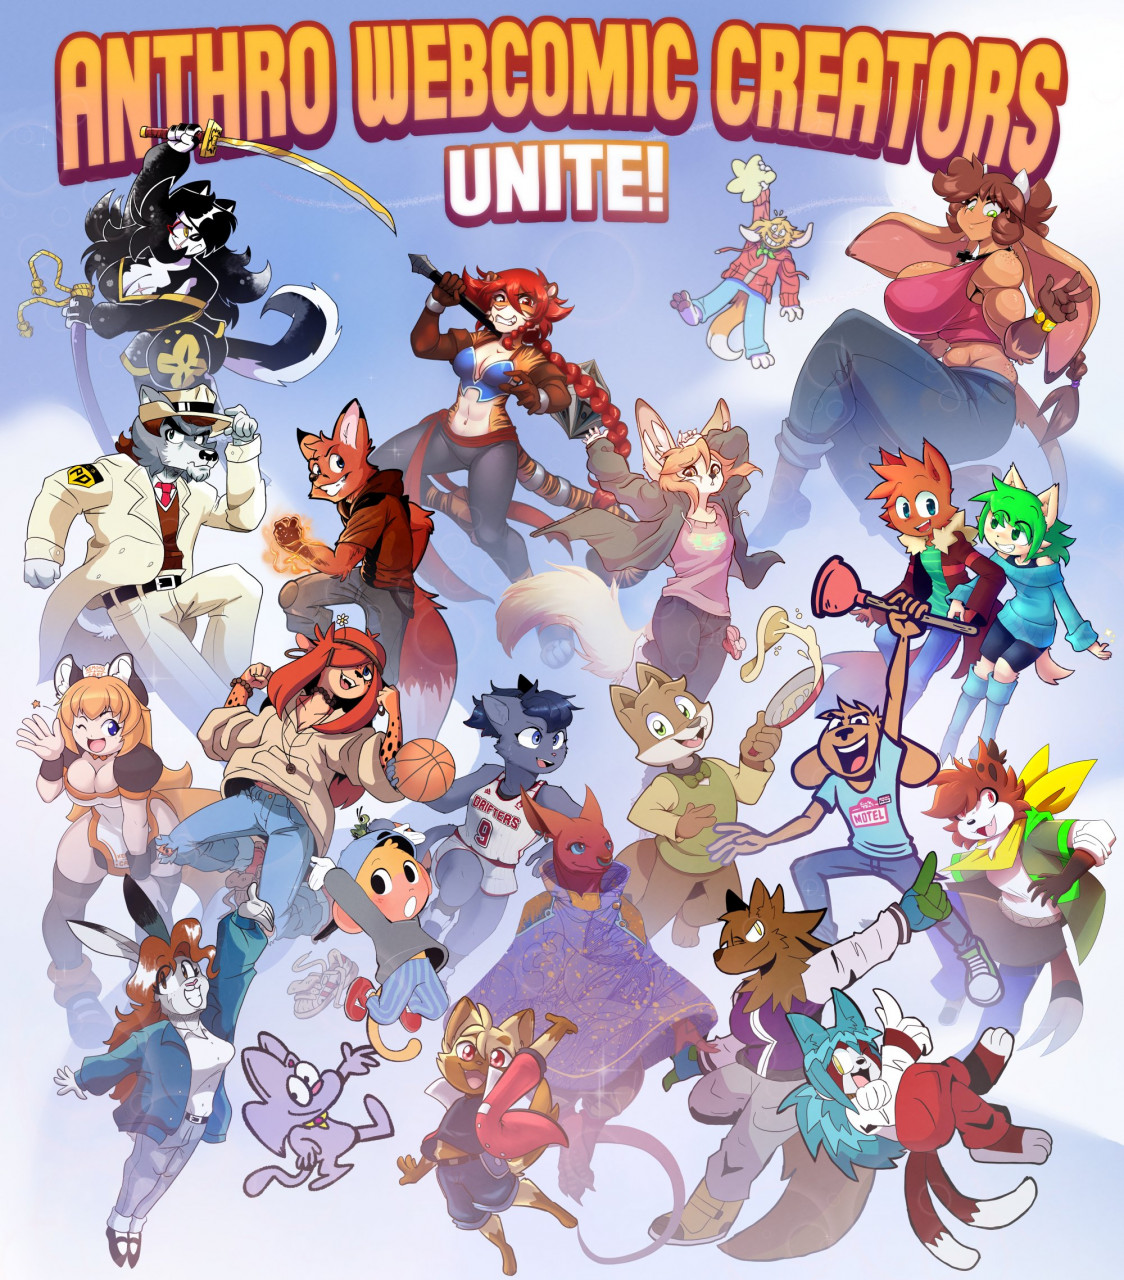 Anthro Webcomic Creators Unite!